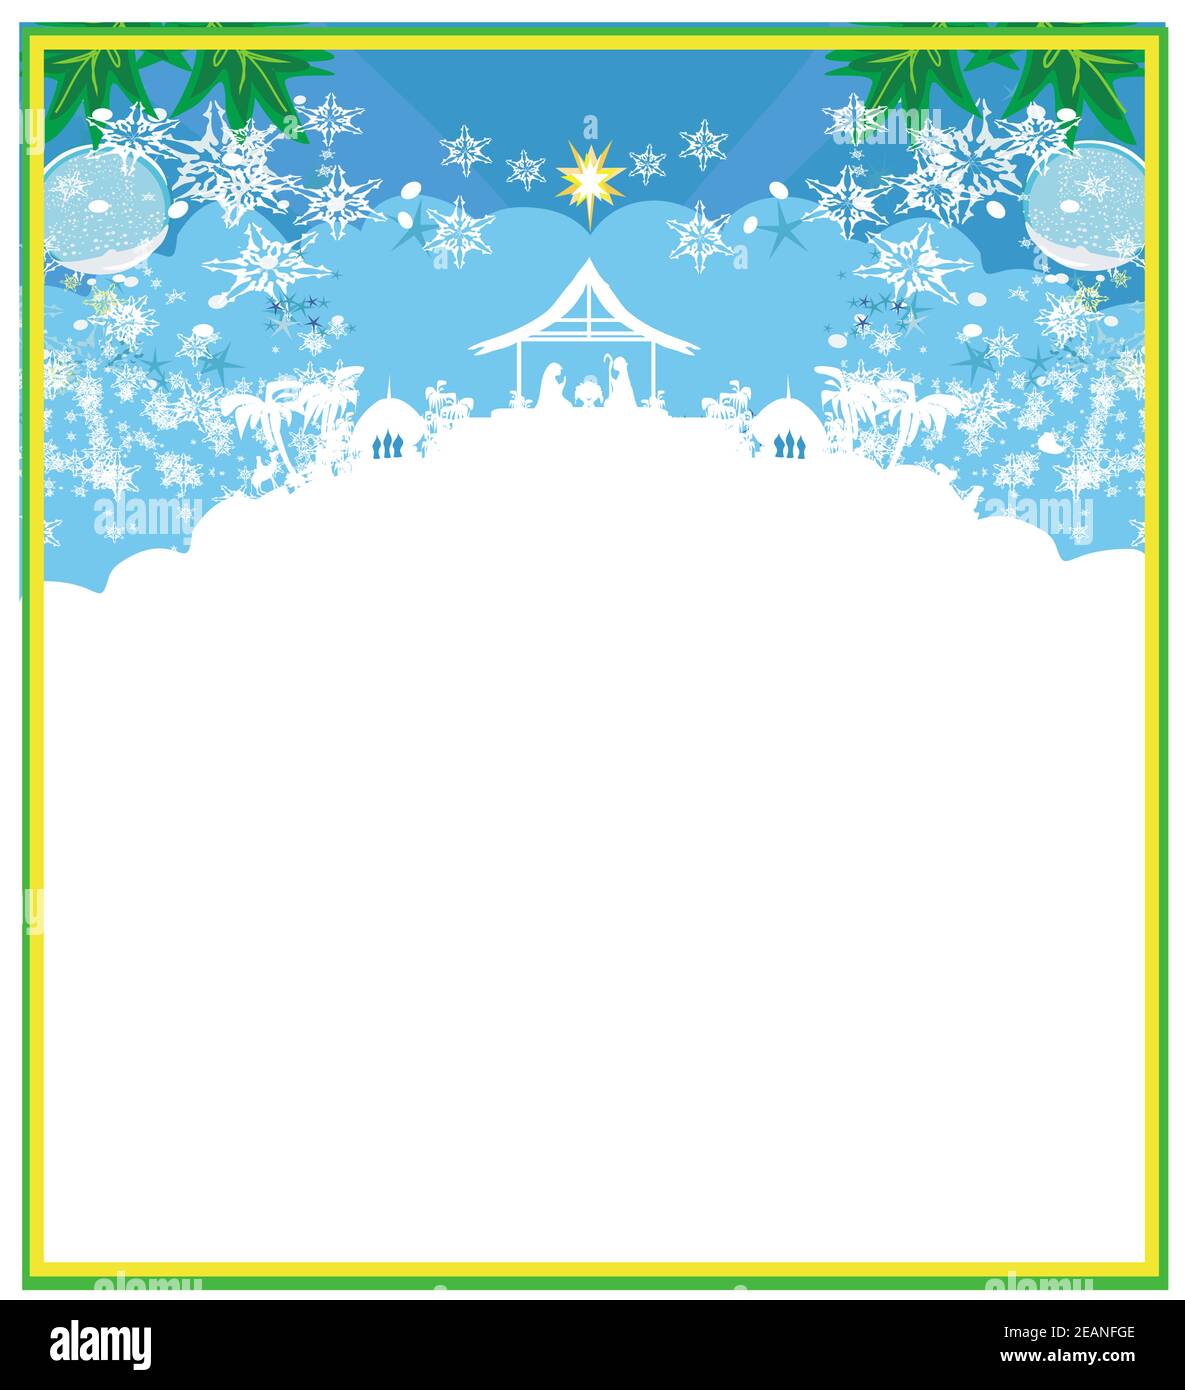 Die Geburt Jesu in Betlehem - dekorative Weihnachtskarte Stockfoto